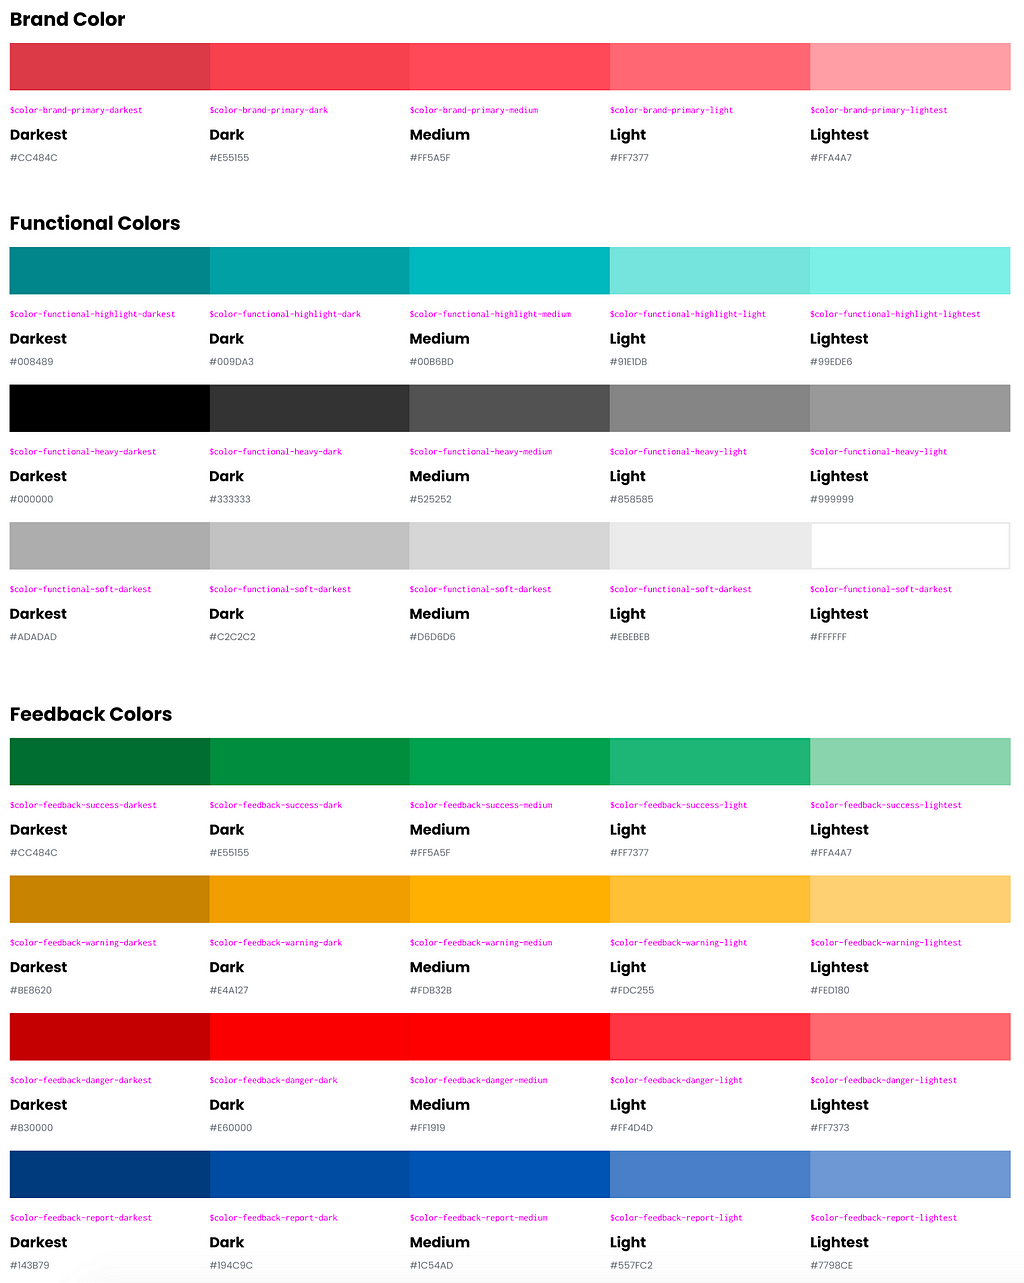 Paletas de cores com a definição da cor principal, além das secundárias e demais cores de auxílio (alerta, erros, etc)